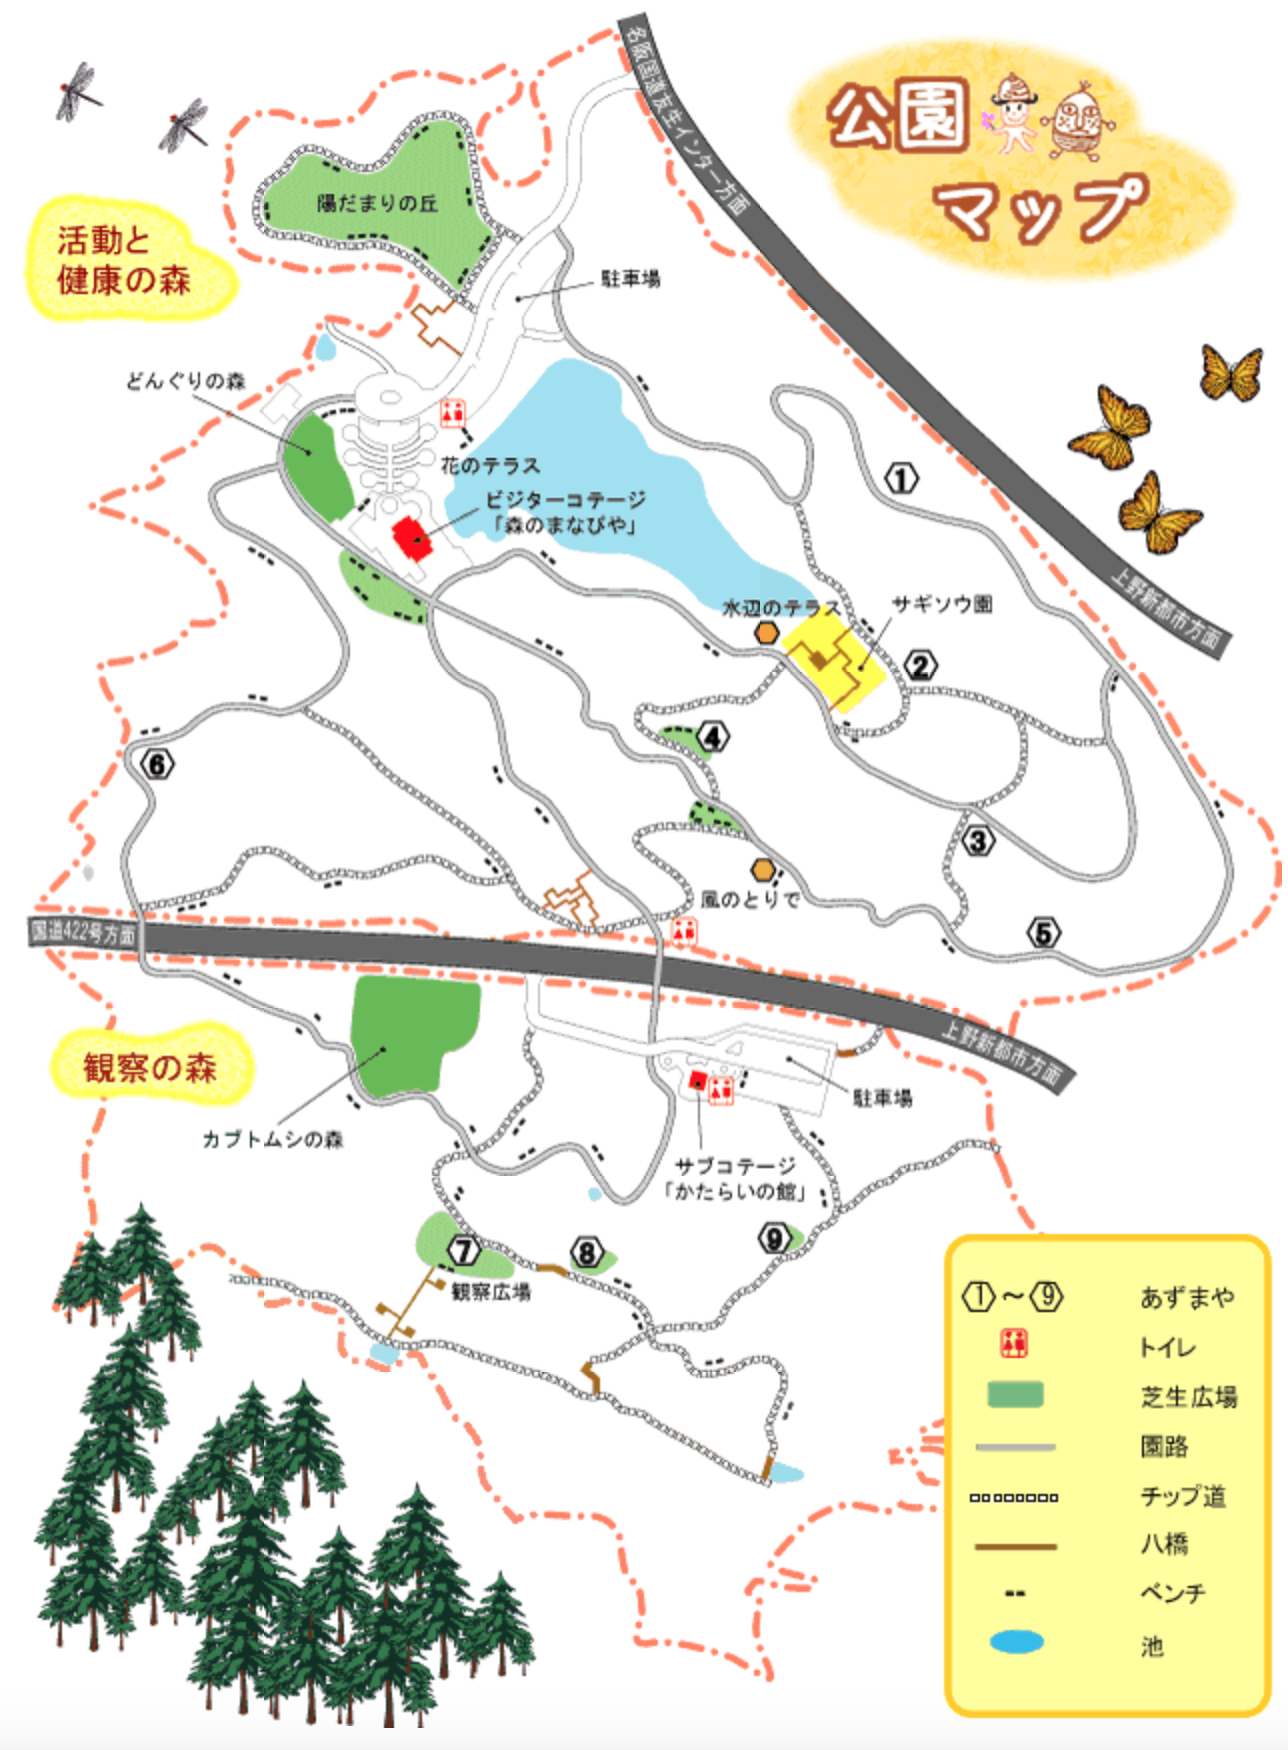 三重県上野森林公園の園内マップ